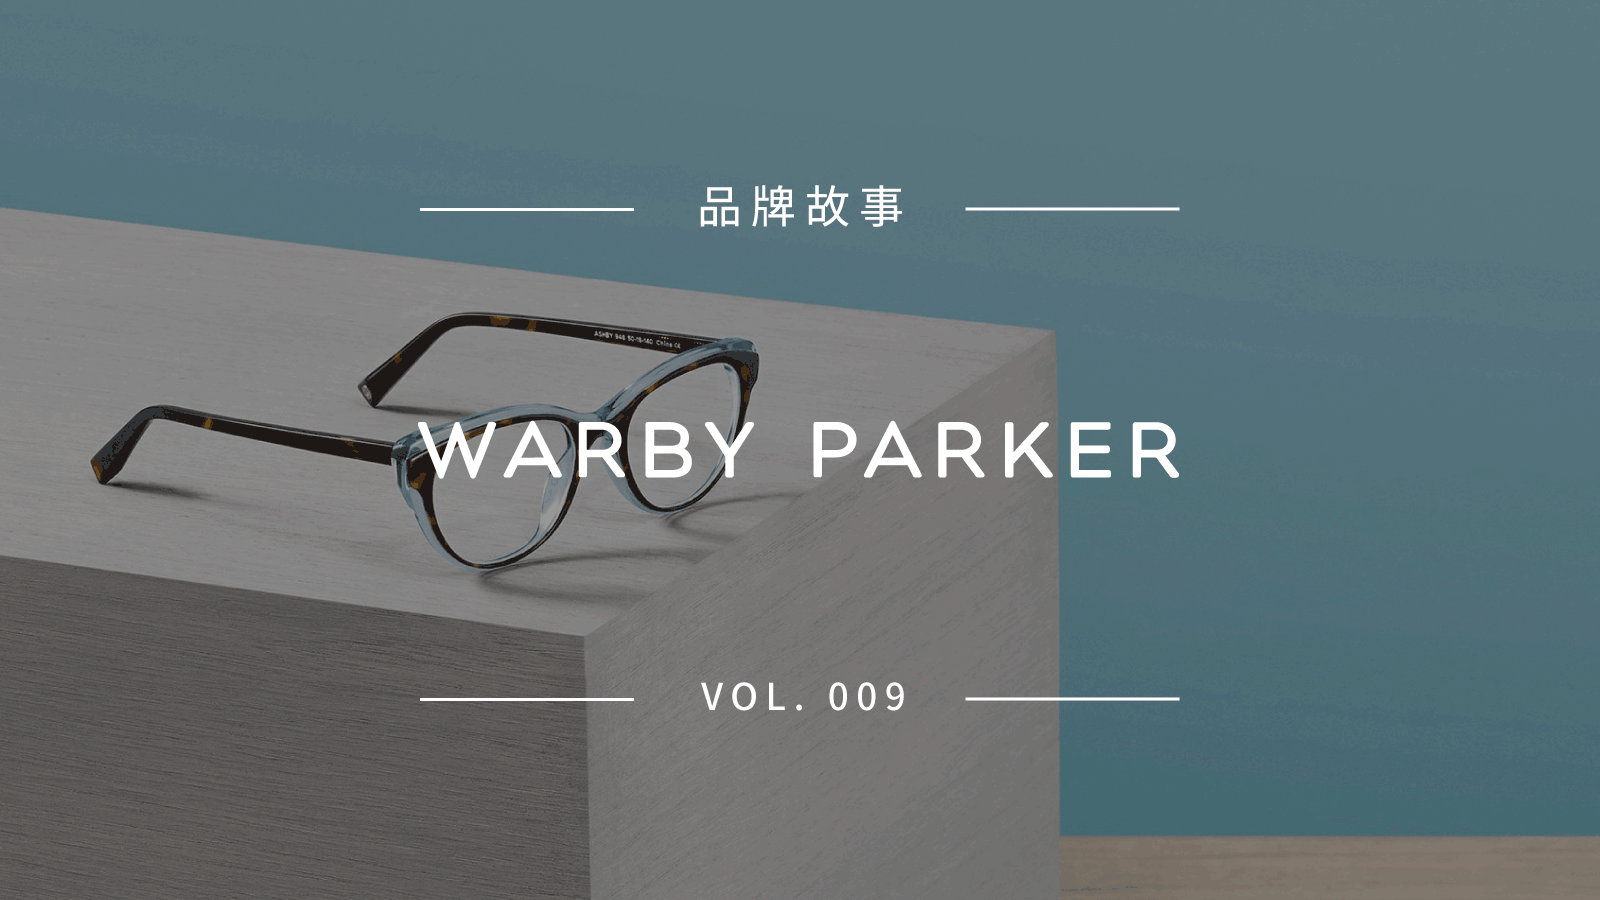 基于 DTC 模式，Warby Parker 如何成为零售创新的标杆？